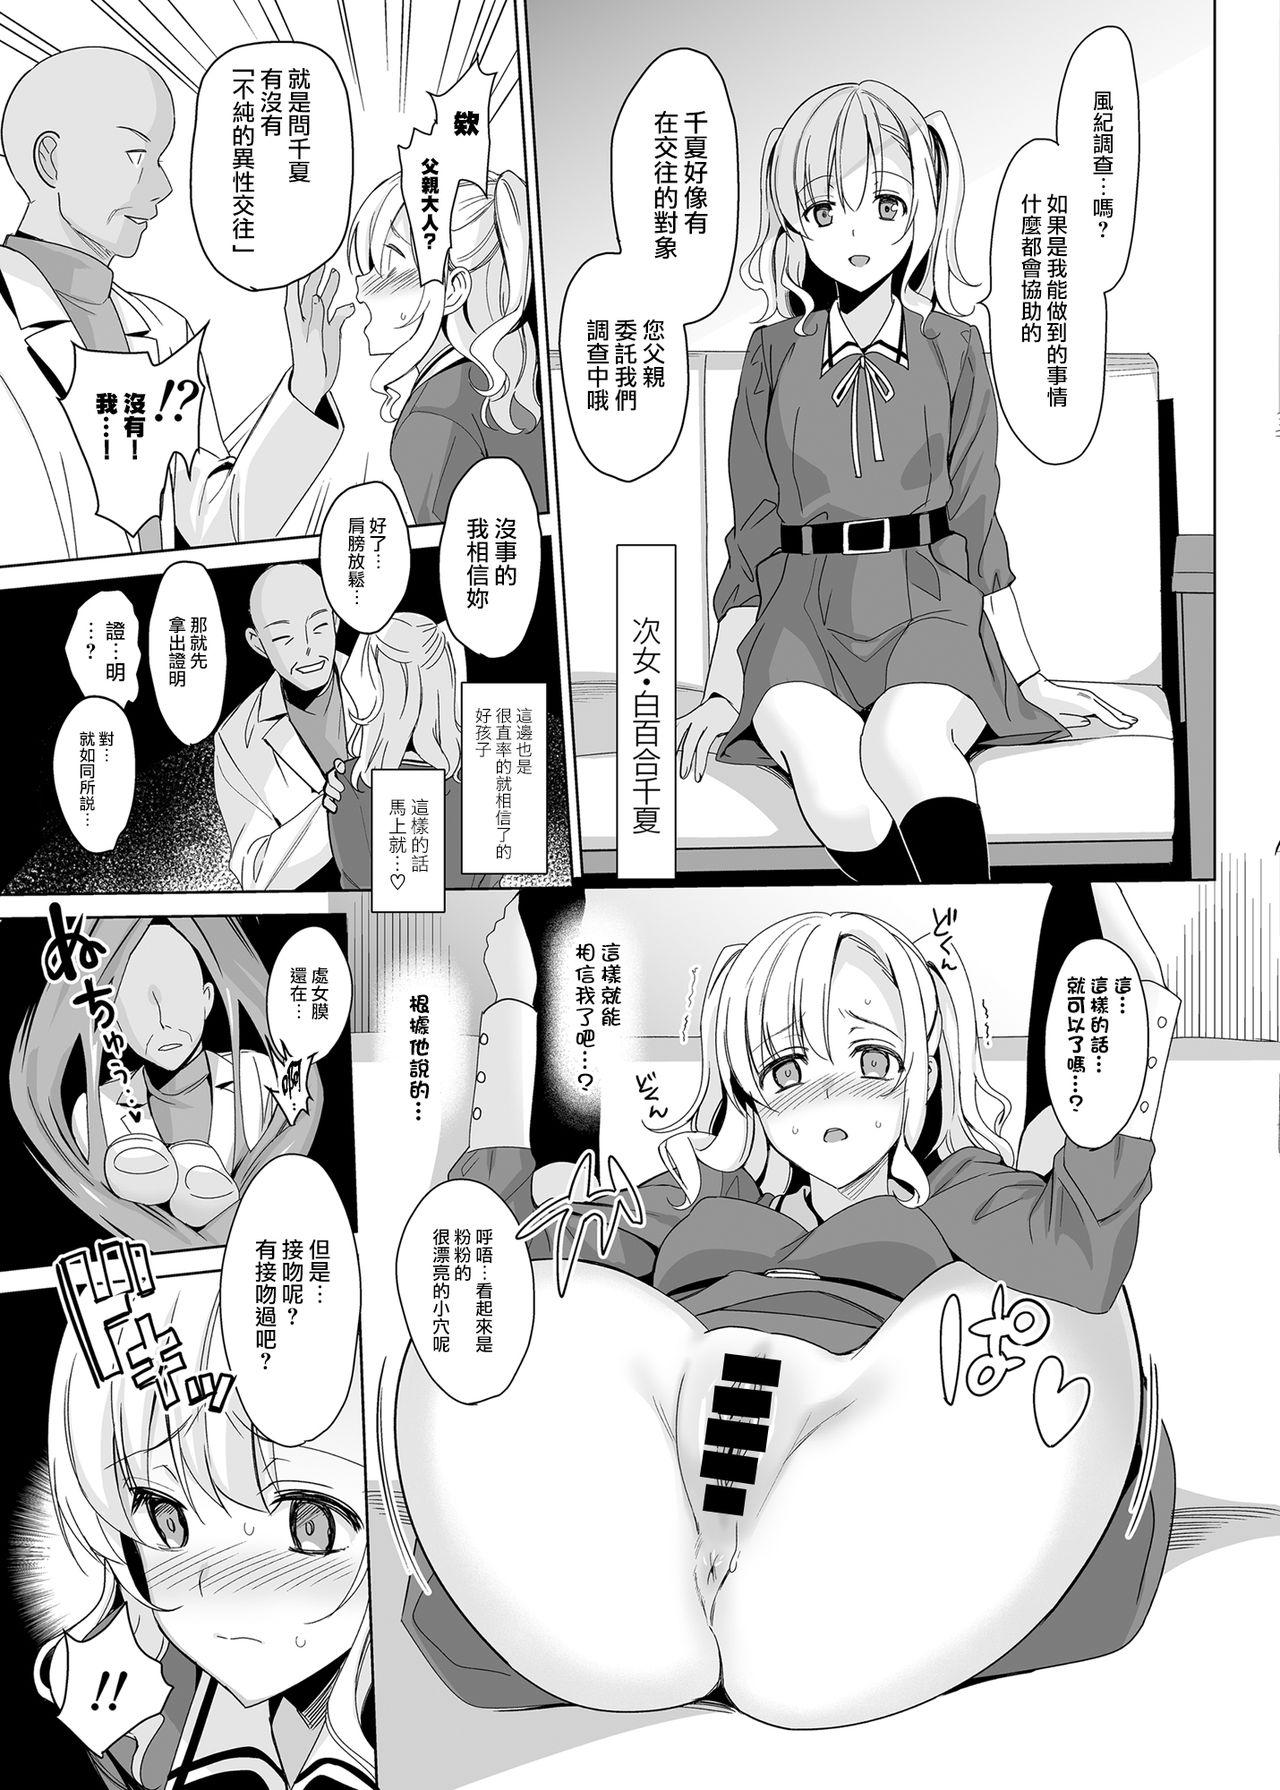 Licking Shirayuri Sanshimai Kouryaku - Original Girl On Girl - Page 13